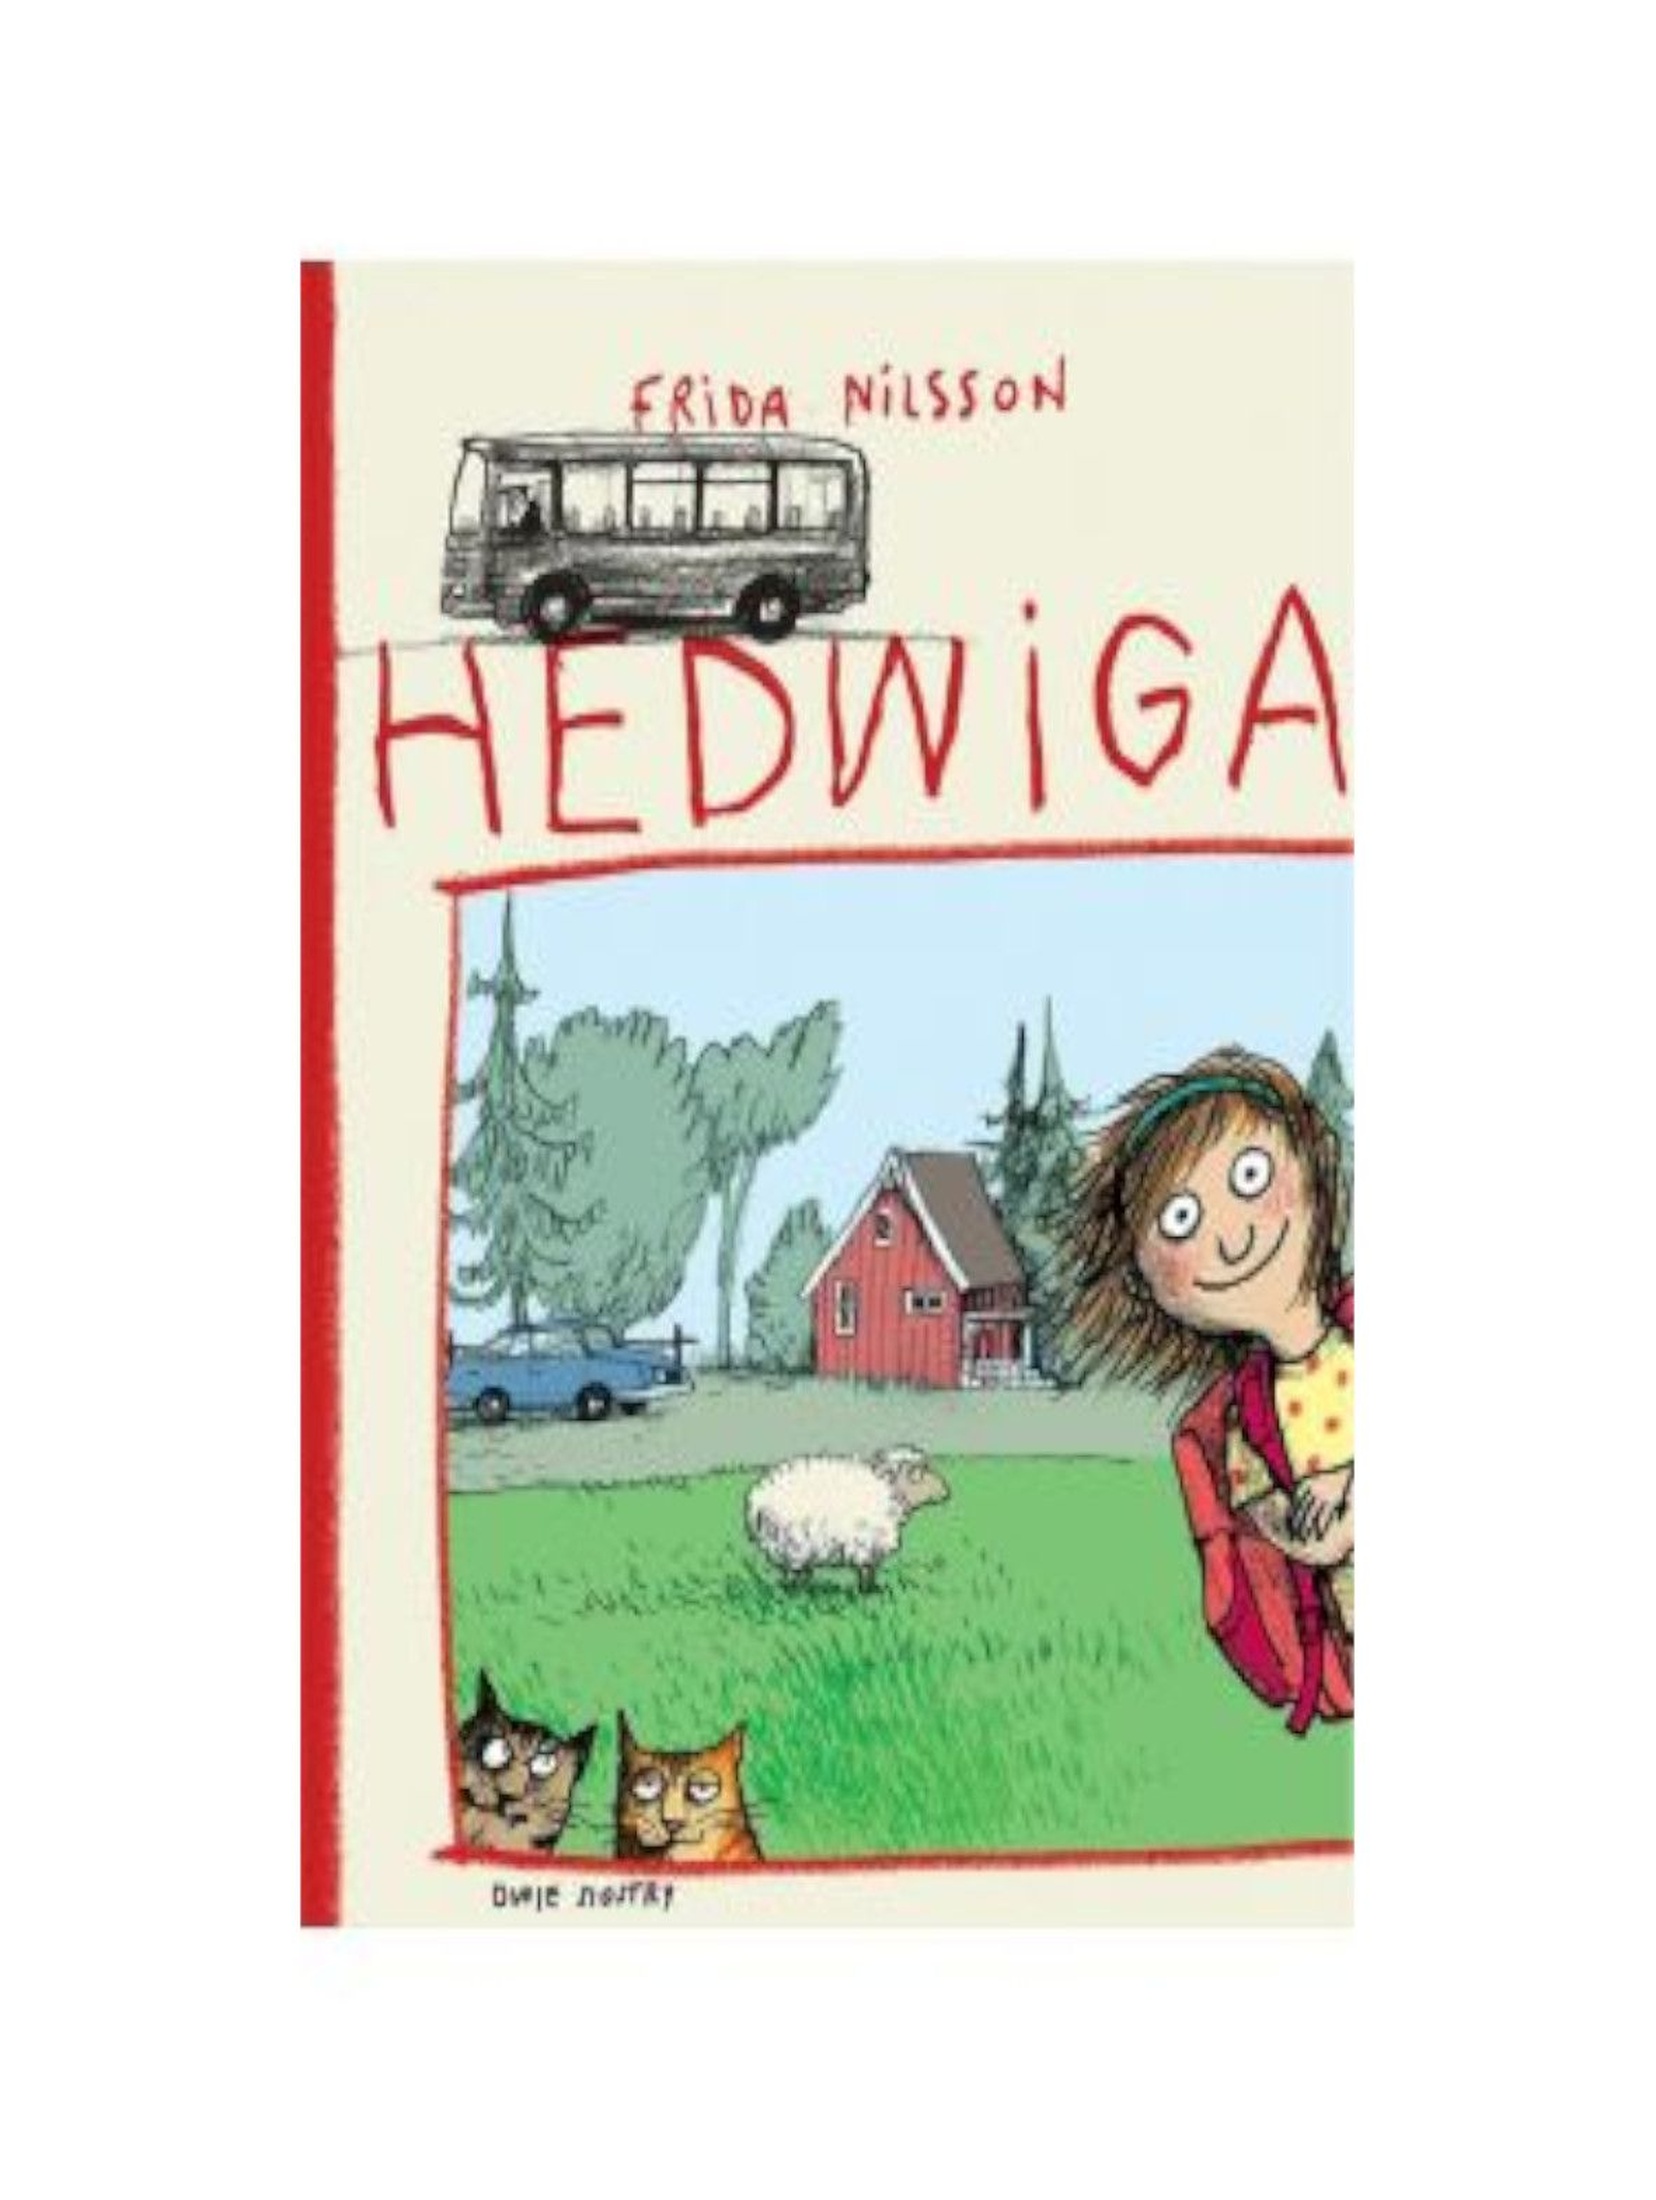 Książka dla dzieci "Hedwiga"